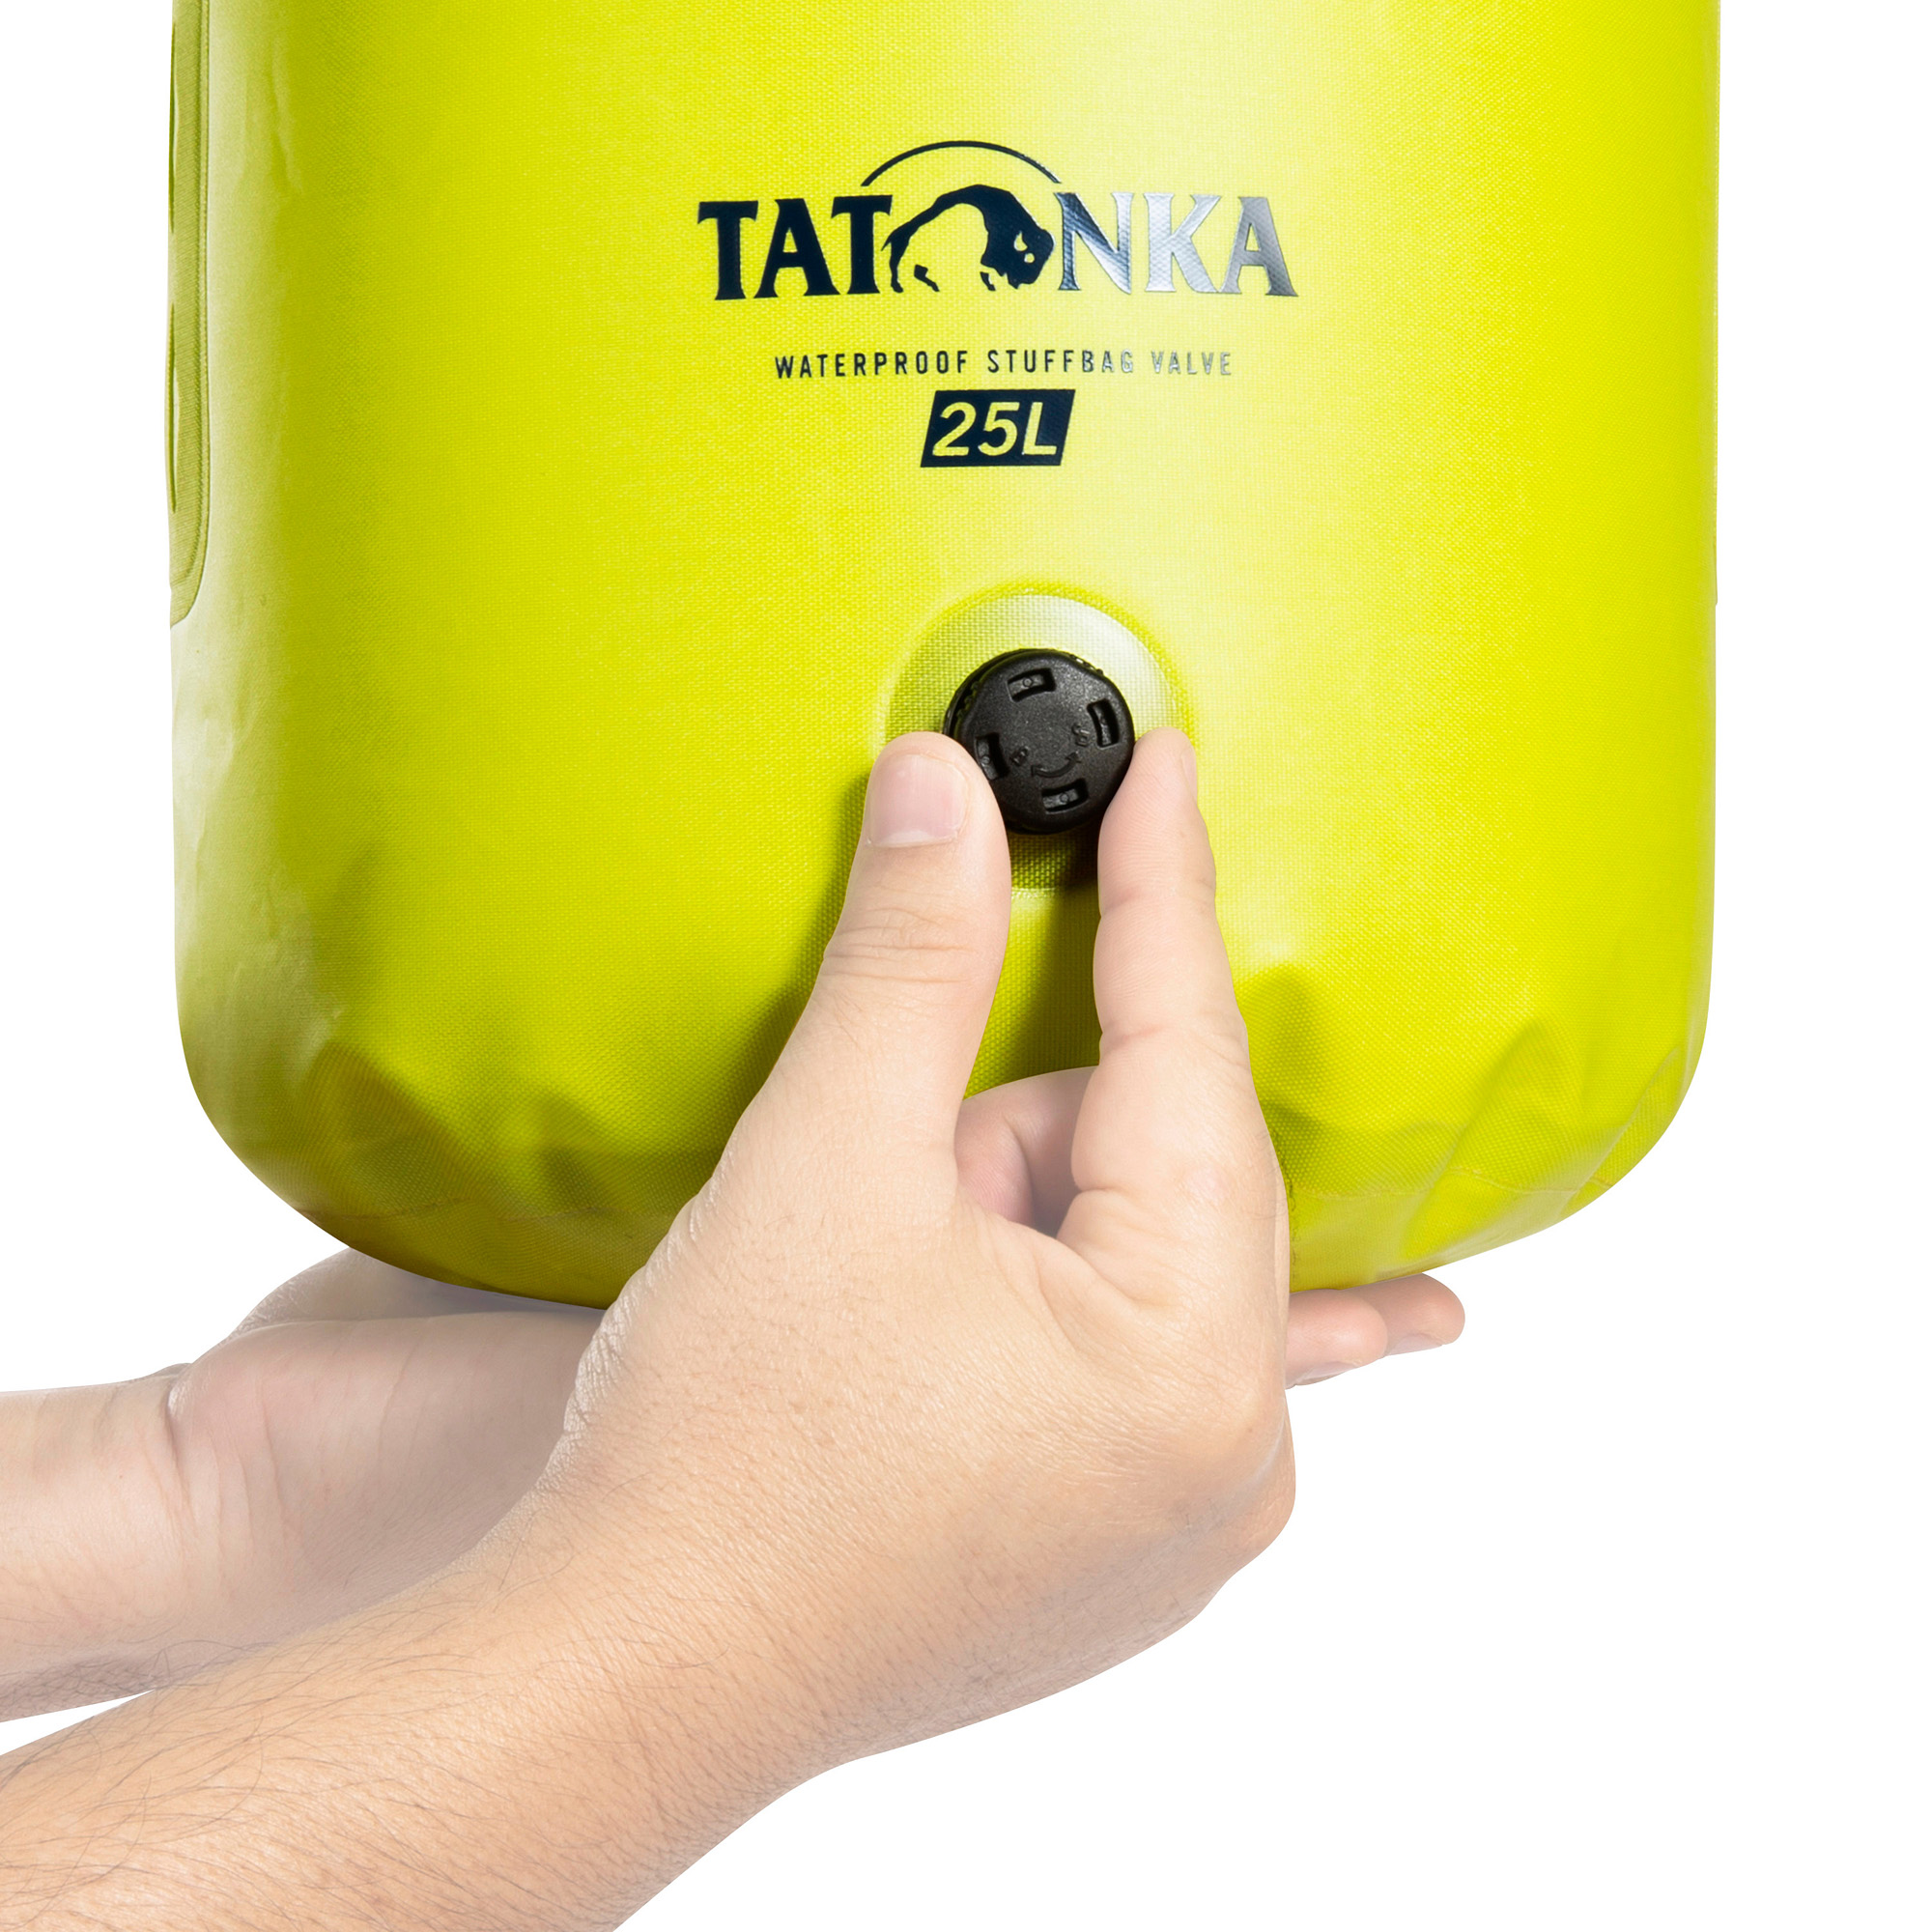 Tatonka WP Stuffbag Valve 25l lime gelb Reisezubehör 4013236393637